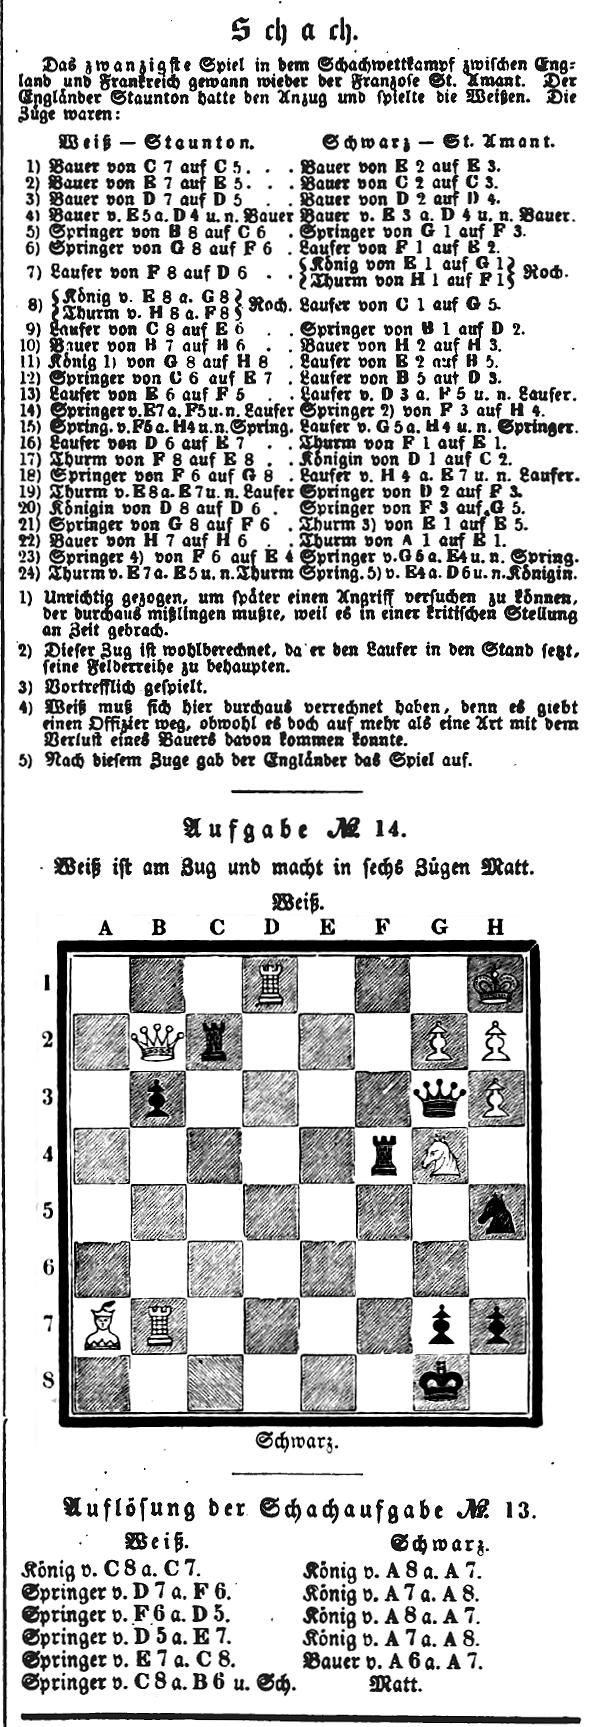 1844.04.01-01 Leipzig Illustrirte Zeitung.jpg